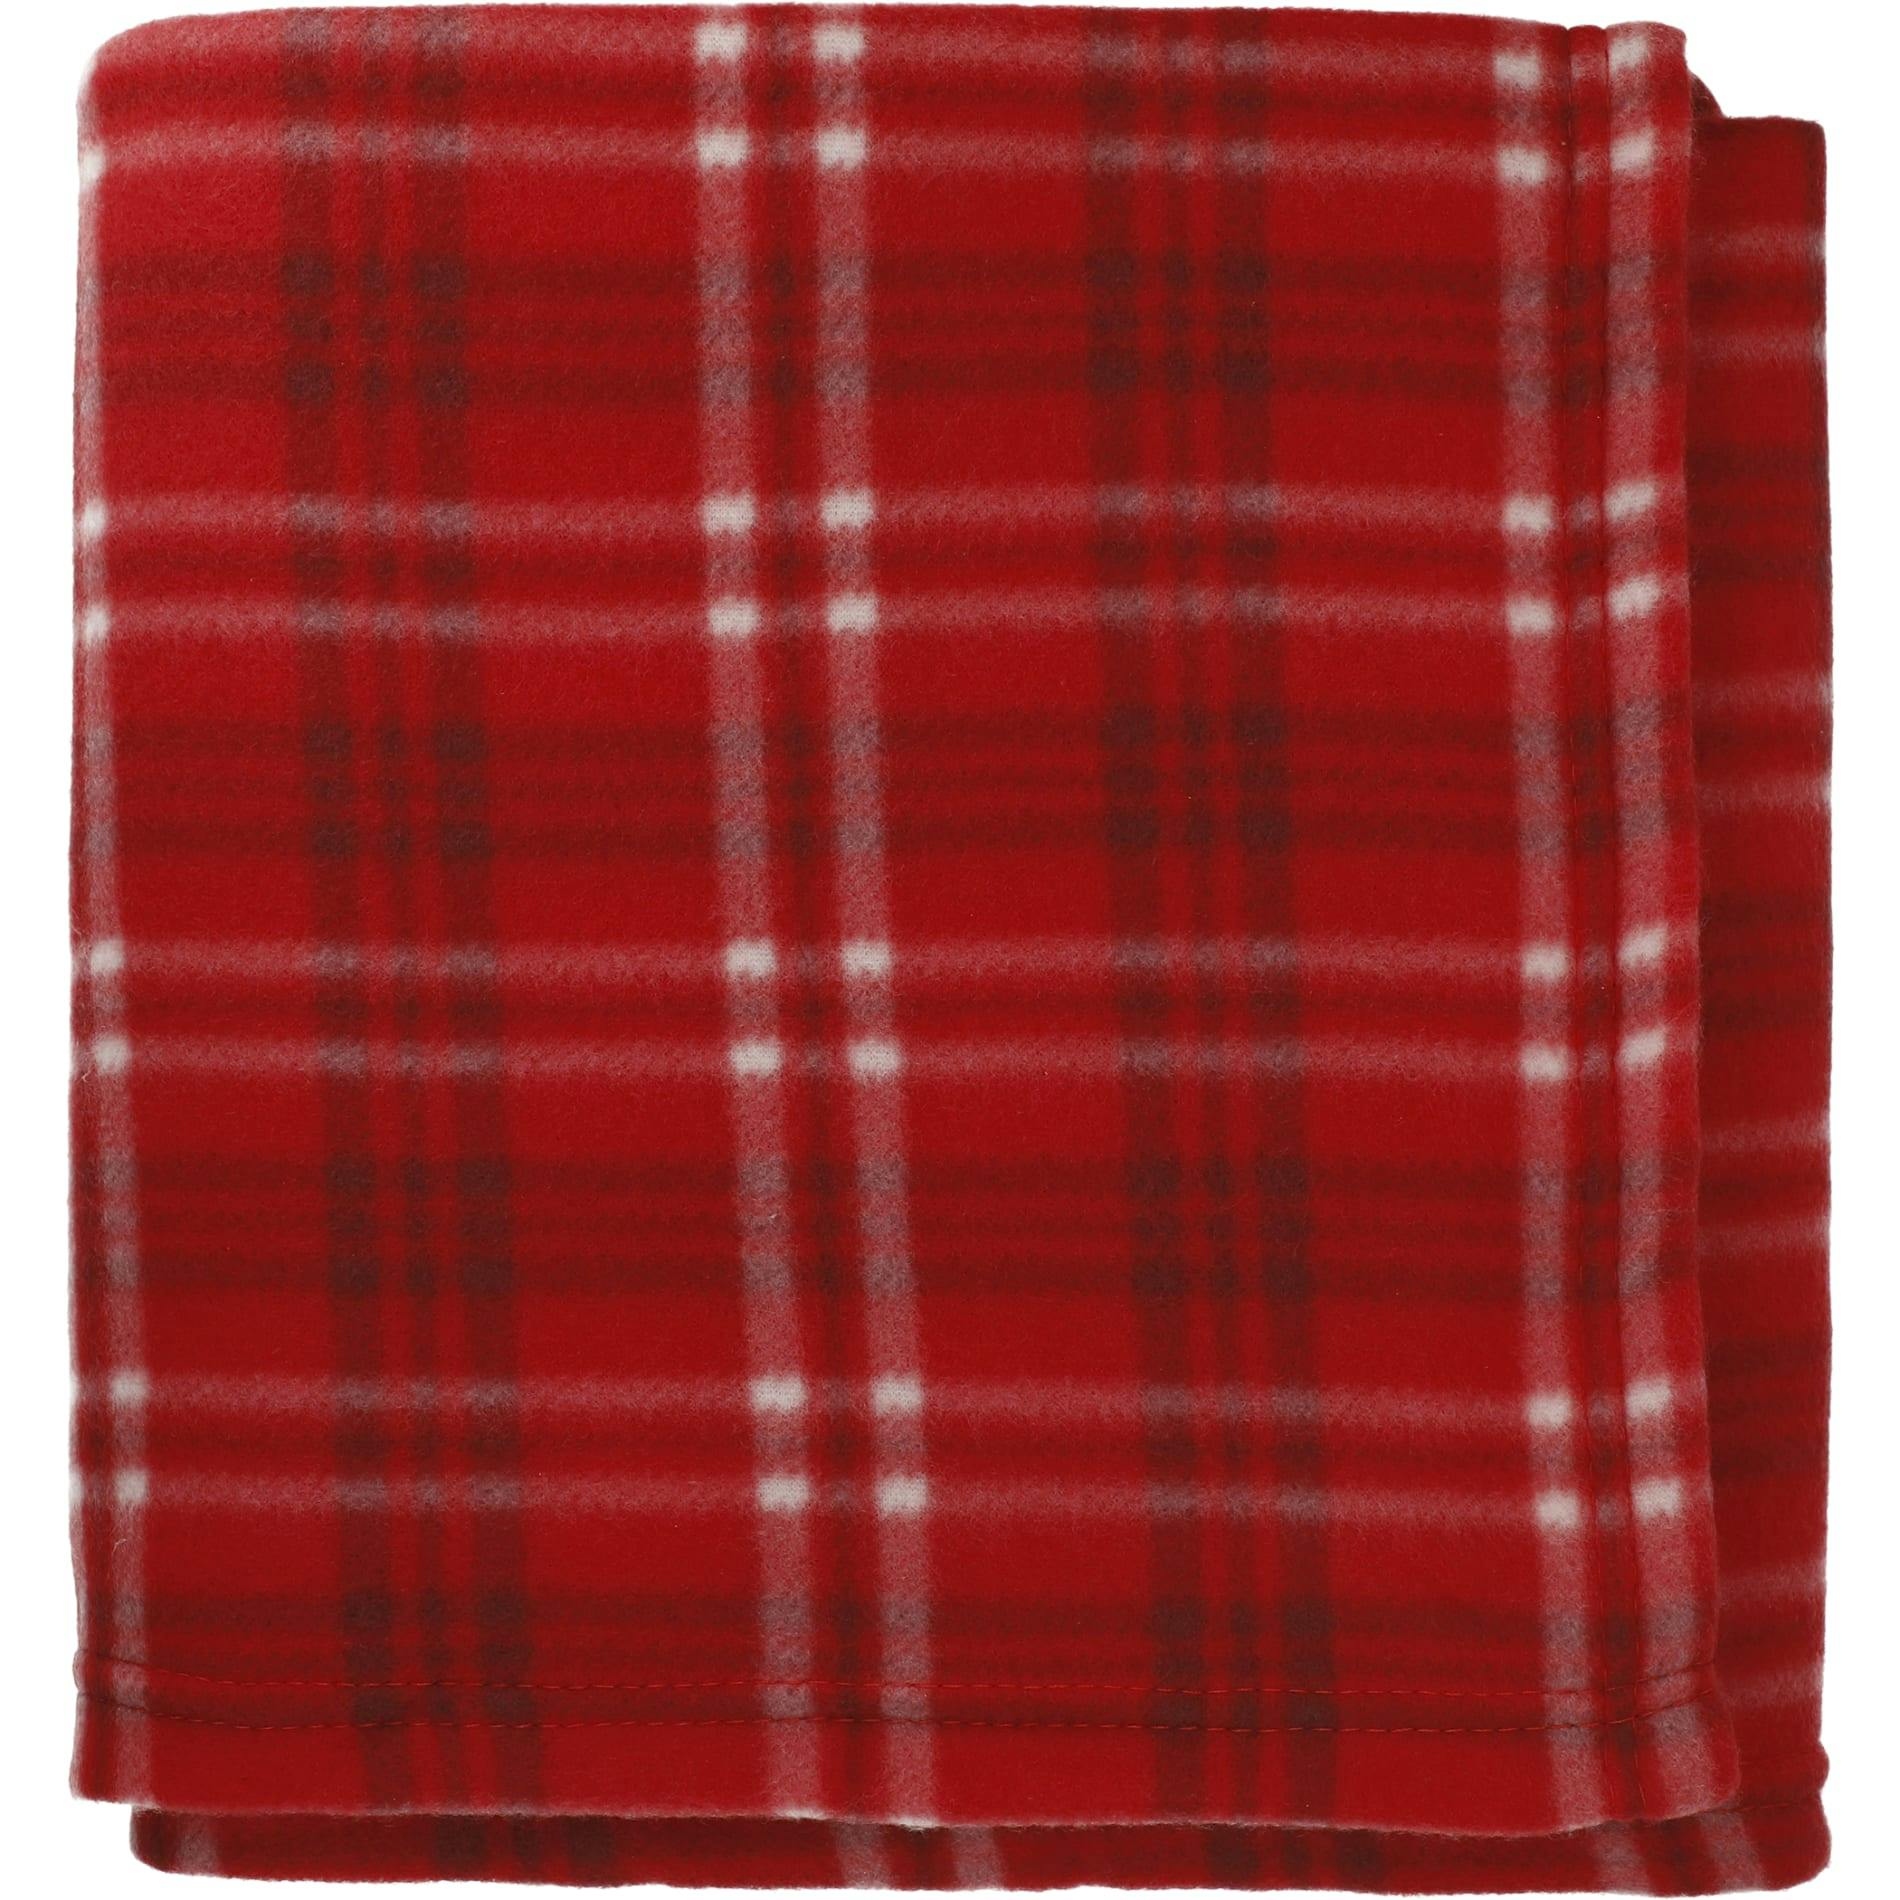 Plaid Fleece Blanket - additional Image 4